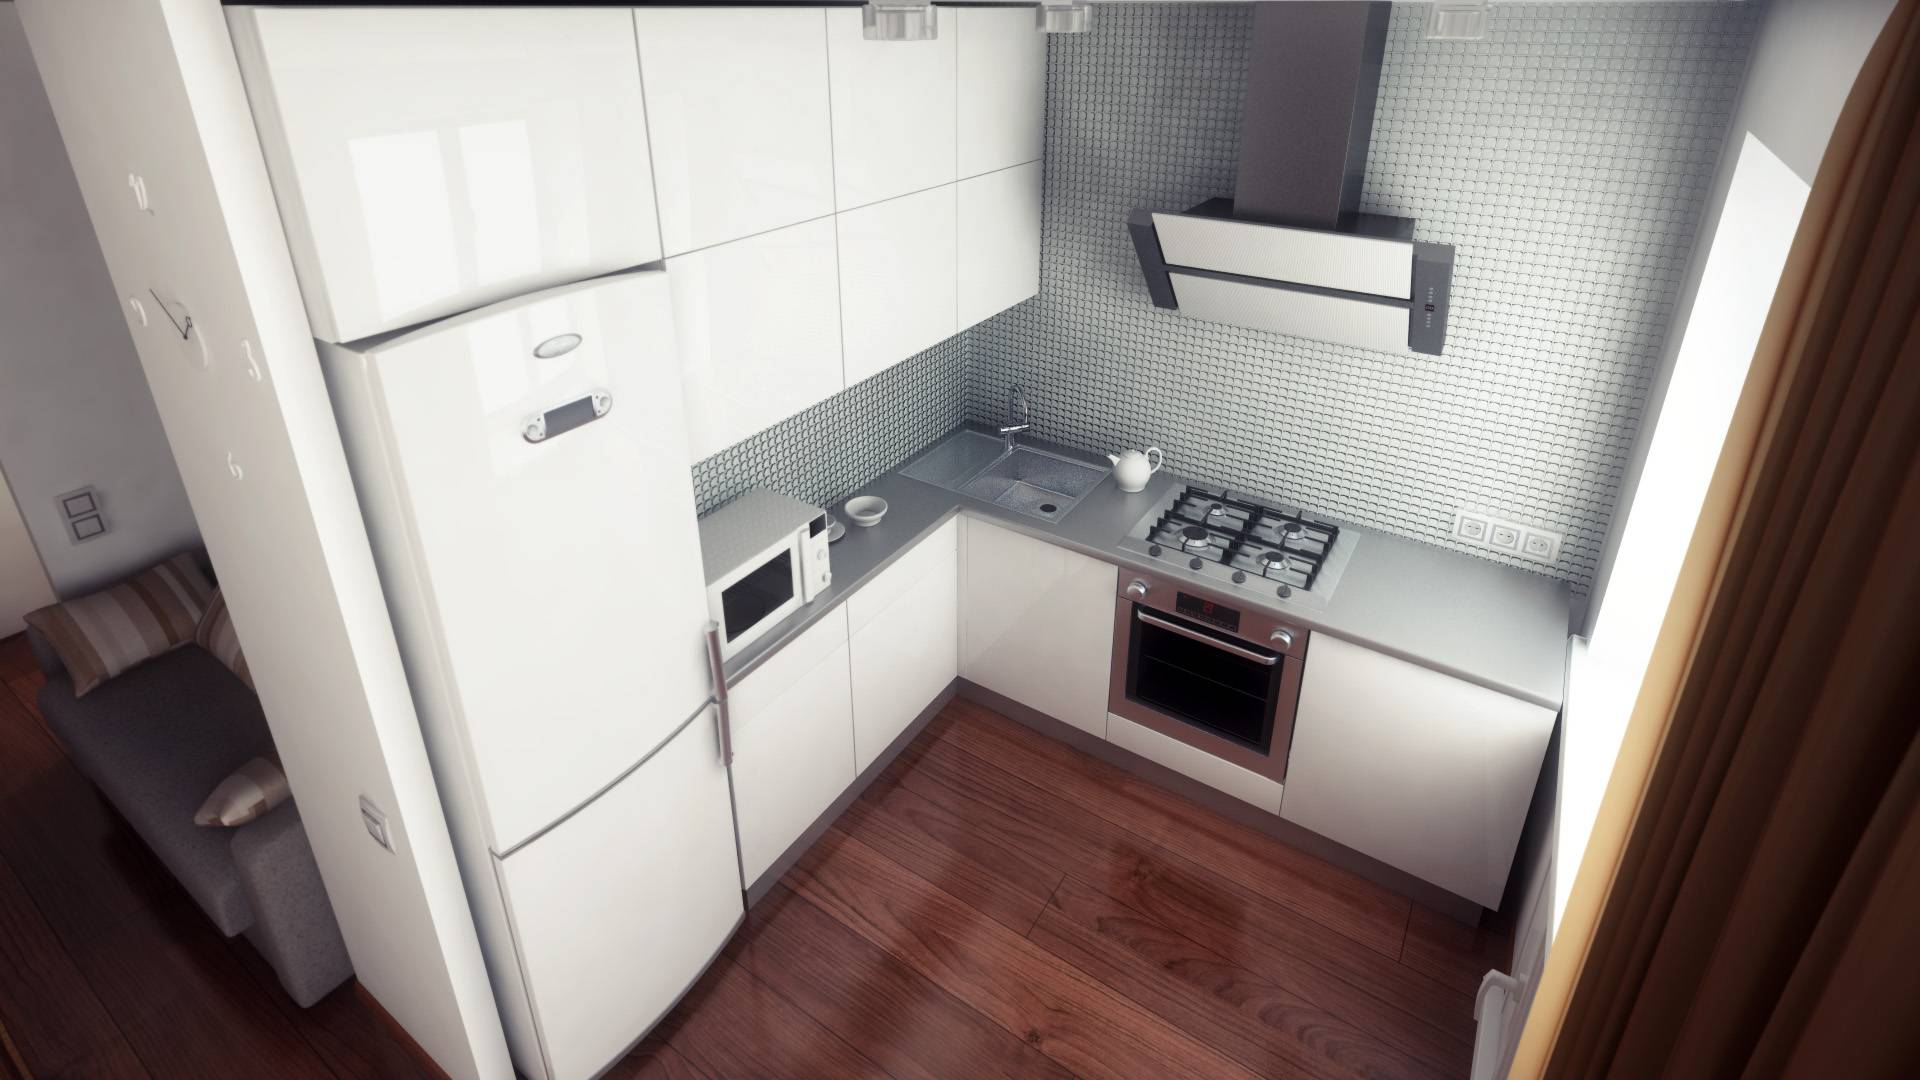 Куда поставить холодильник в маленькой кухне: варианты размещения